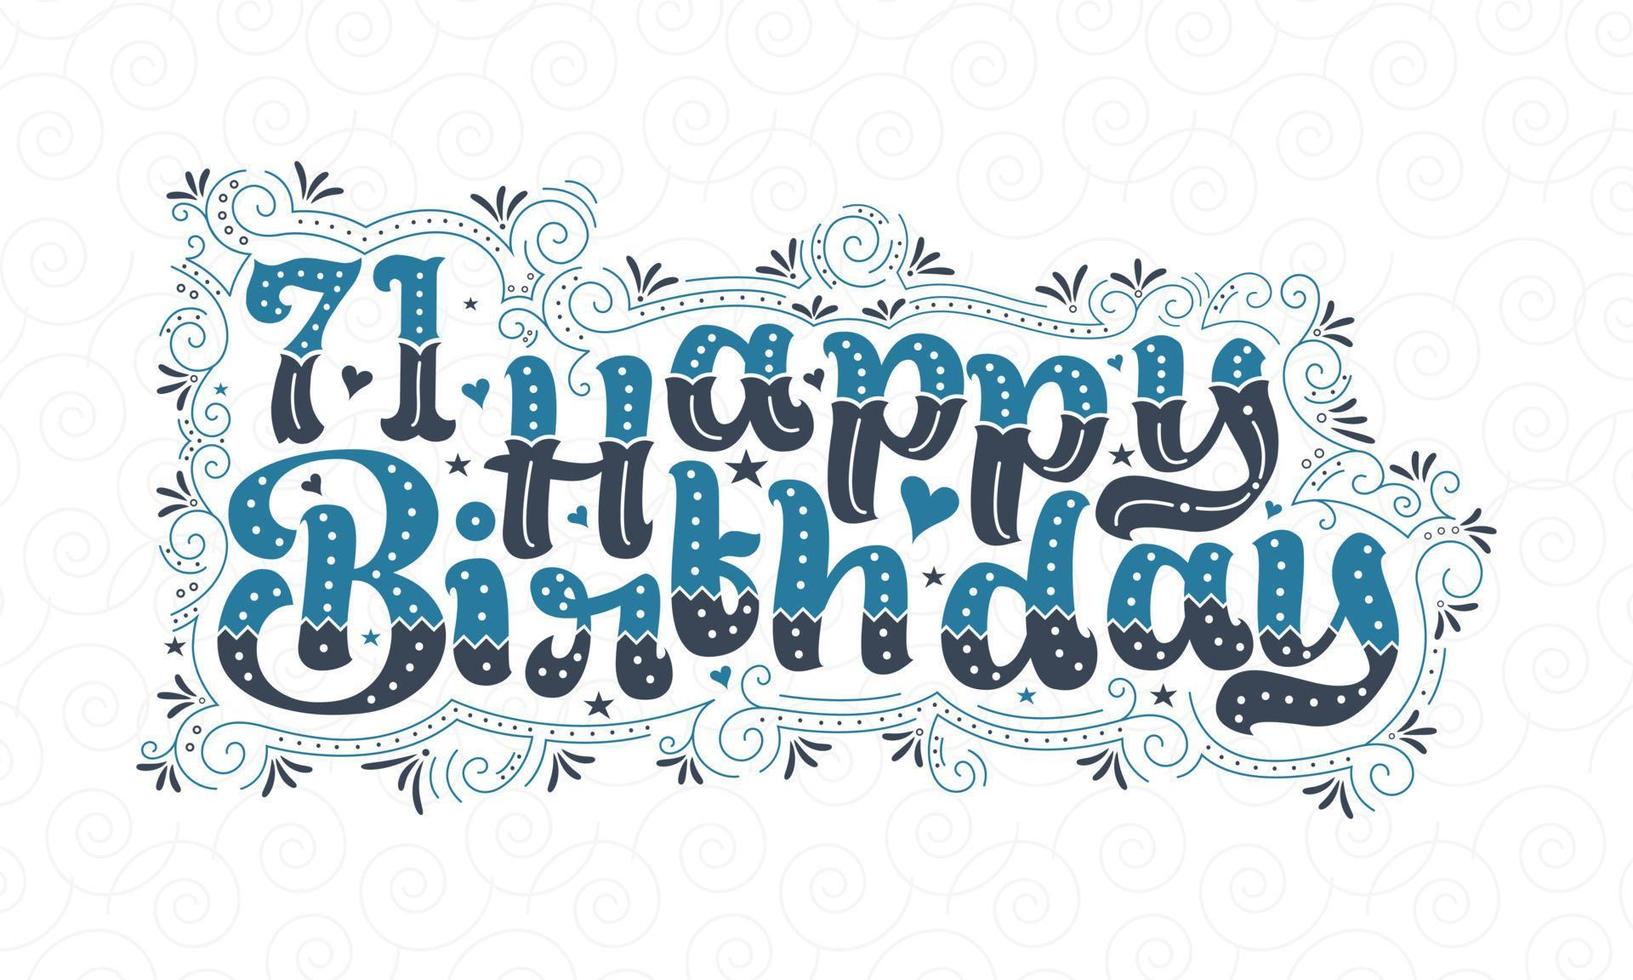 71:a grattis på födelsedagen bokstäver, 71 år födelsedag vacker typografi design med blå och svarta prickar, linjer och blad. vektor